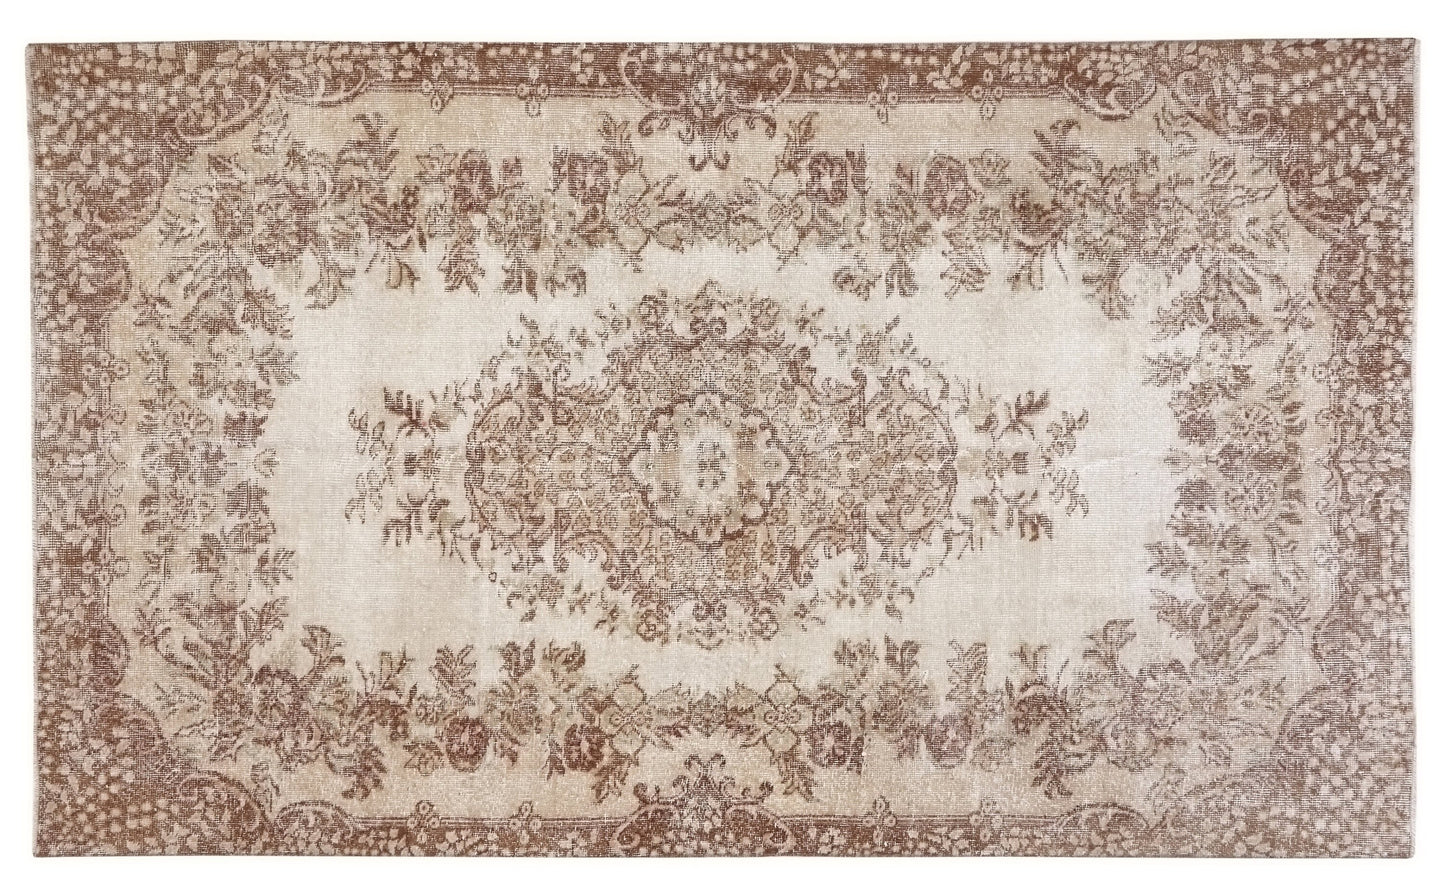 Antique rug, Turkish Area rug, Vintage Carpet, Hand knotted rug, Unique rug, Turkey rug, 6x9 Rug, Anatolia rug, Oushak Carpet rug, 10222